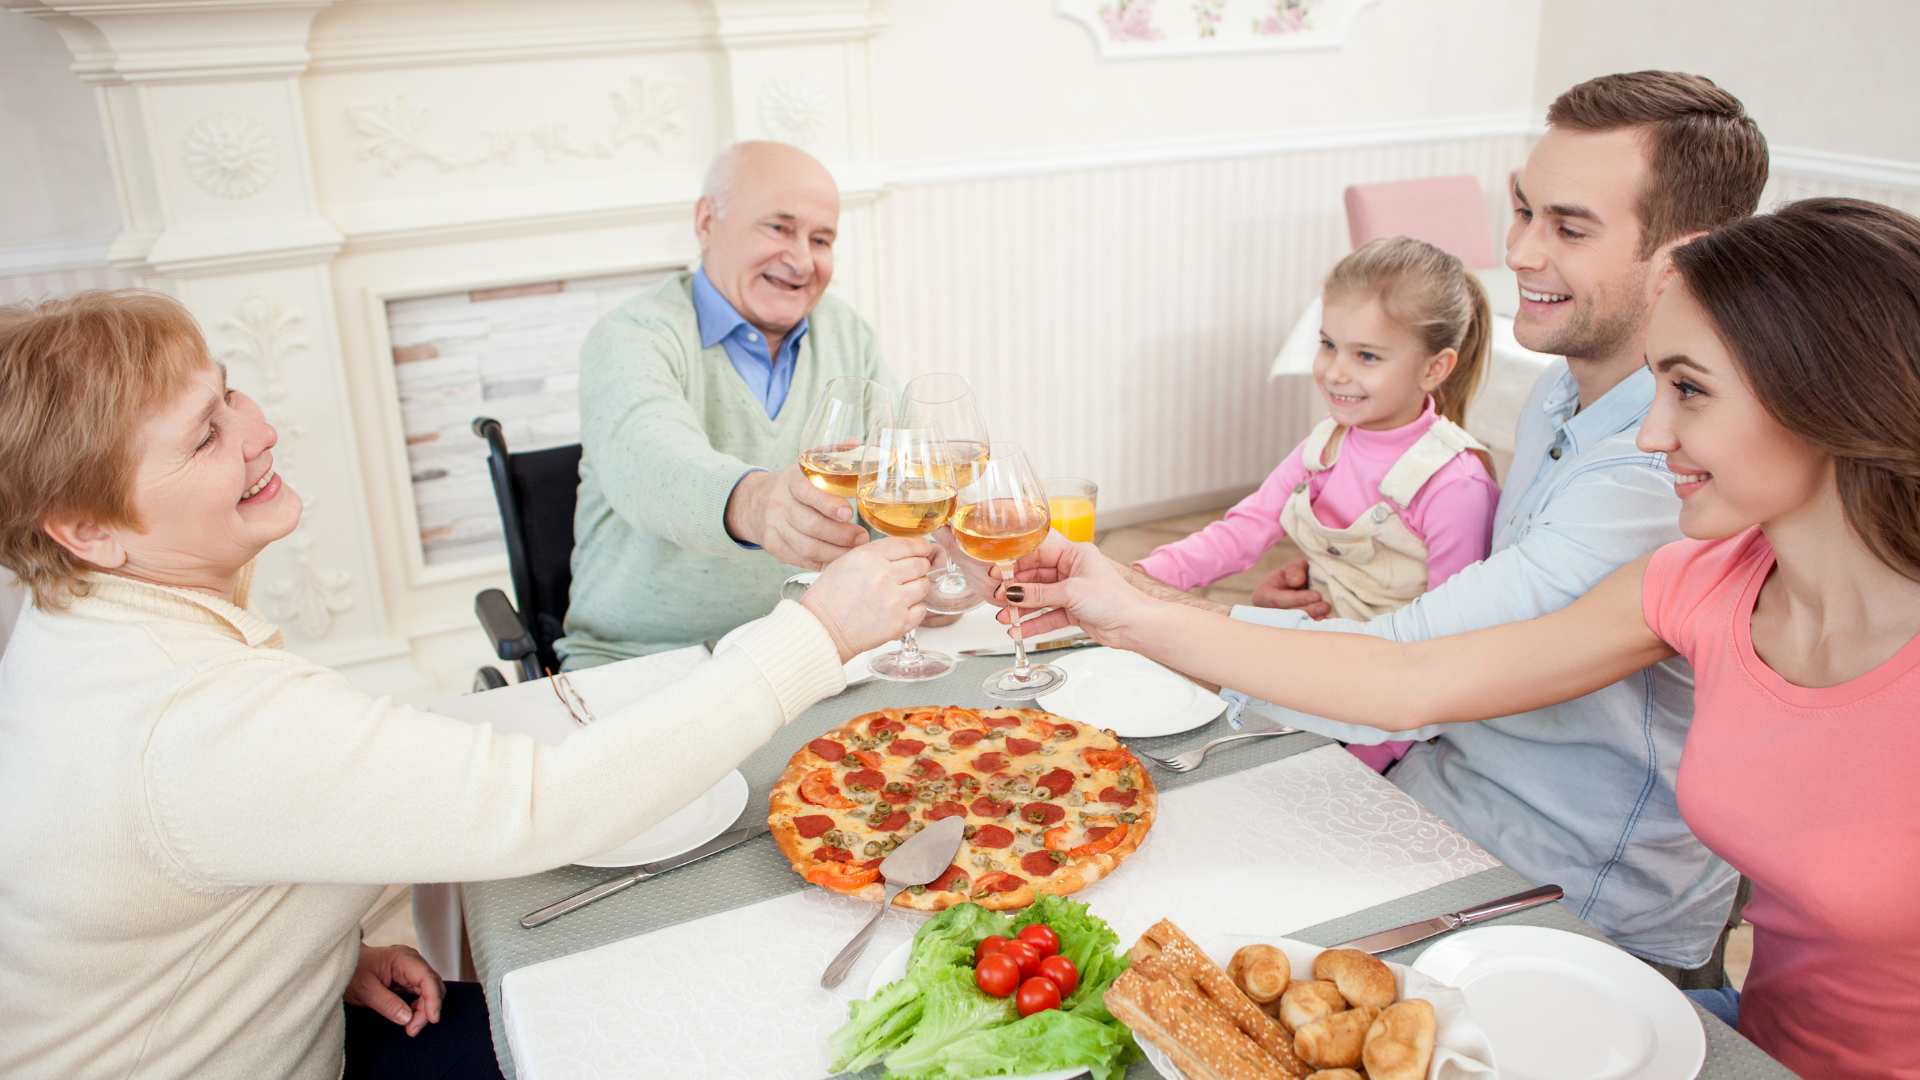 A fotografia mostra pessoas sentadas à mesa, fazendo um brinde. Da esquerda para a direita: uma senhora loira, em torno de 60 à 70 anos, com uma taça de vinho; um senhor grisalho, em torno de 70 anos, em cadeira de rodas, sorrindo e segurando uma taça de vinho; uma menina loira, em torno de 10 anos, sorridente e segurando um copo de suco. A menina está sentada no colo de um homem branco, na faixa dos 30 anos, sorridente, que também segura uma taça. Ao seu lado, uma mulher branca de cabelos castanhos, sorrindo e segurando uma taça. Ao centro do brinde, a mesa possui pratos, talheres e alimentos como pizza, salada e pães.